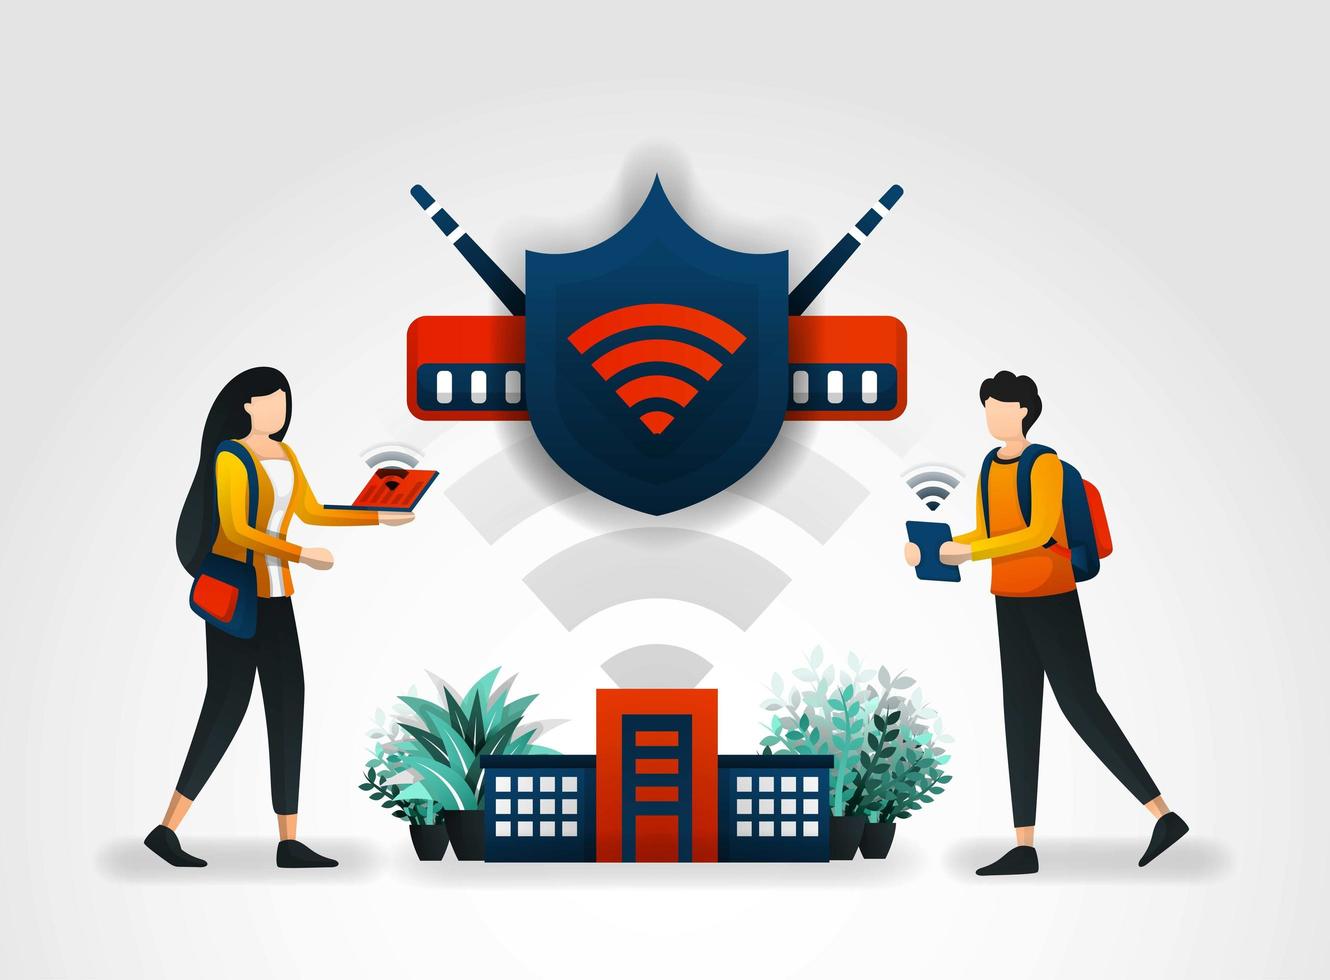 vektor illustration koncept. studenter har tillgång till internet säkert med hjälp av ett wifi-nätverk och sköld. nätverkssäkerhetskontroll som säkrar wifi med hjälp av säkerhetstjänstföretaget och säkerhetsföretagen